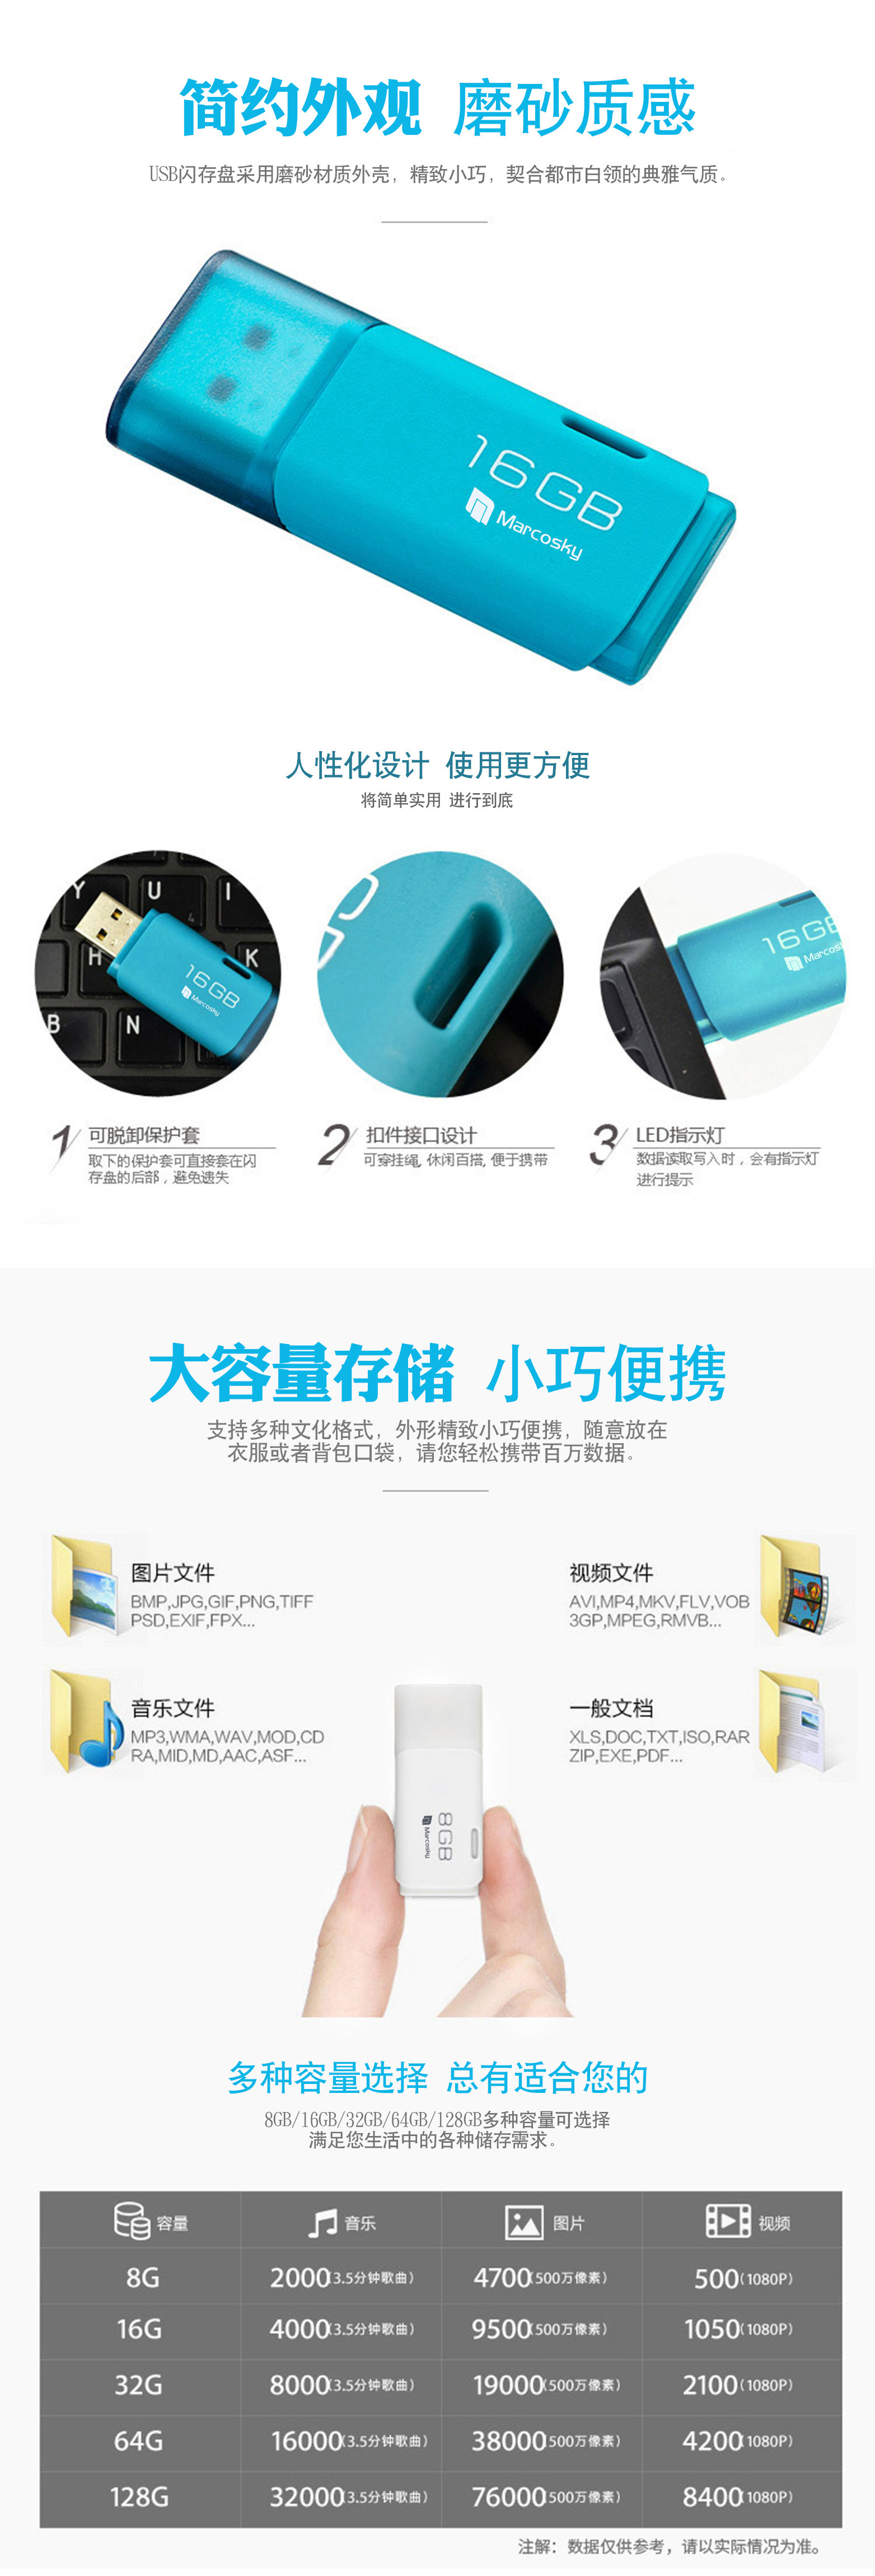 厂家批发迷你塑胶U盘32g 企业品牌宣传礼品定制 塑胶U盘厂家